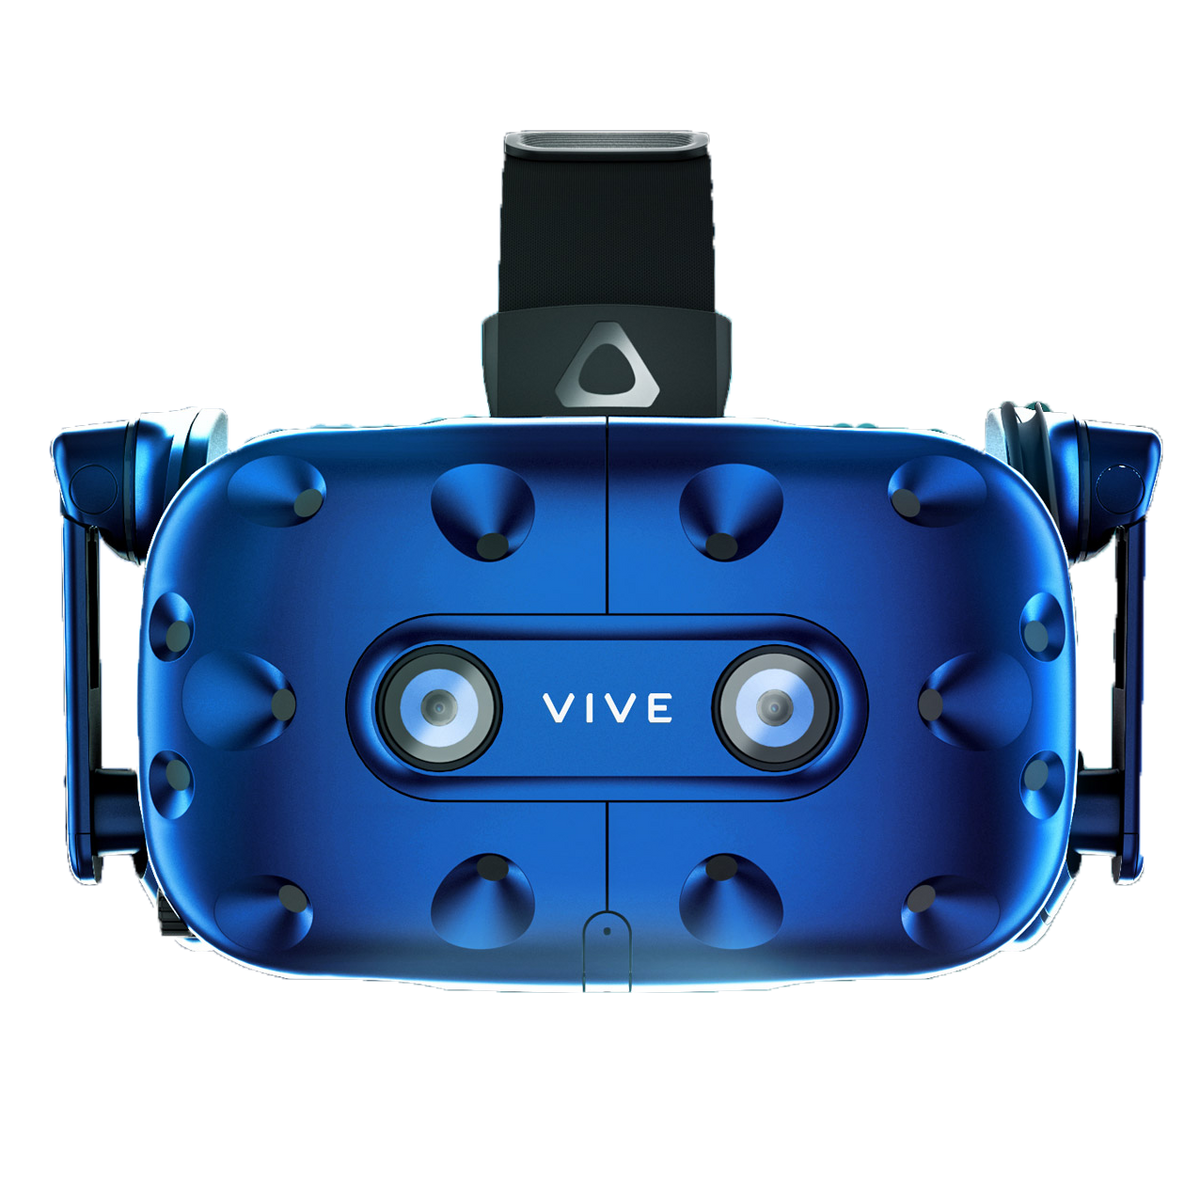 Окуляри віртуальної реальності HTC Vive Pro Headset